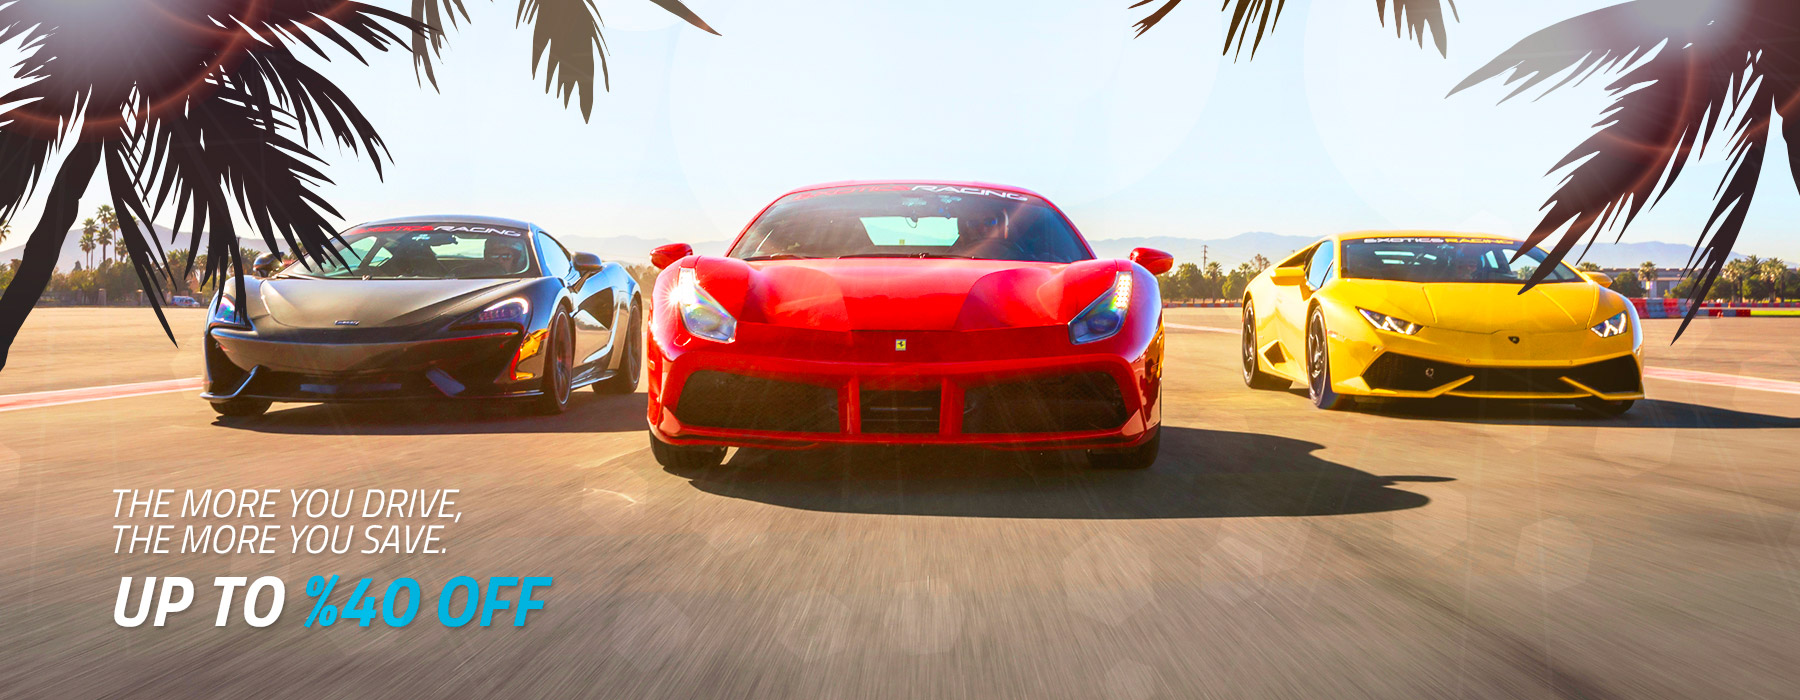 Drive A Ferrari Supercar On A Professional Racetrack With Exotics Racing